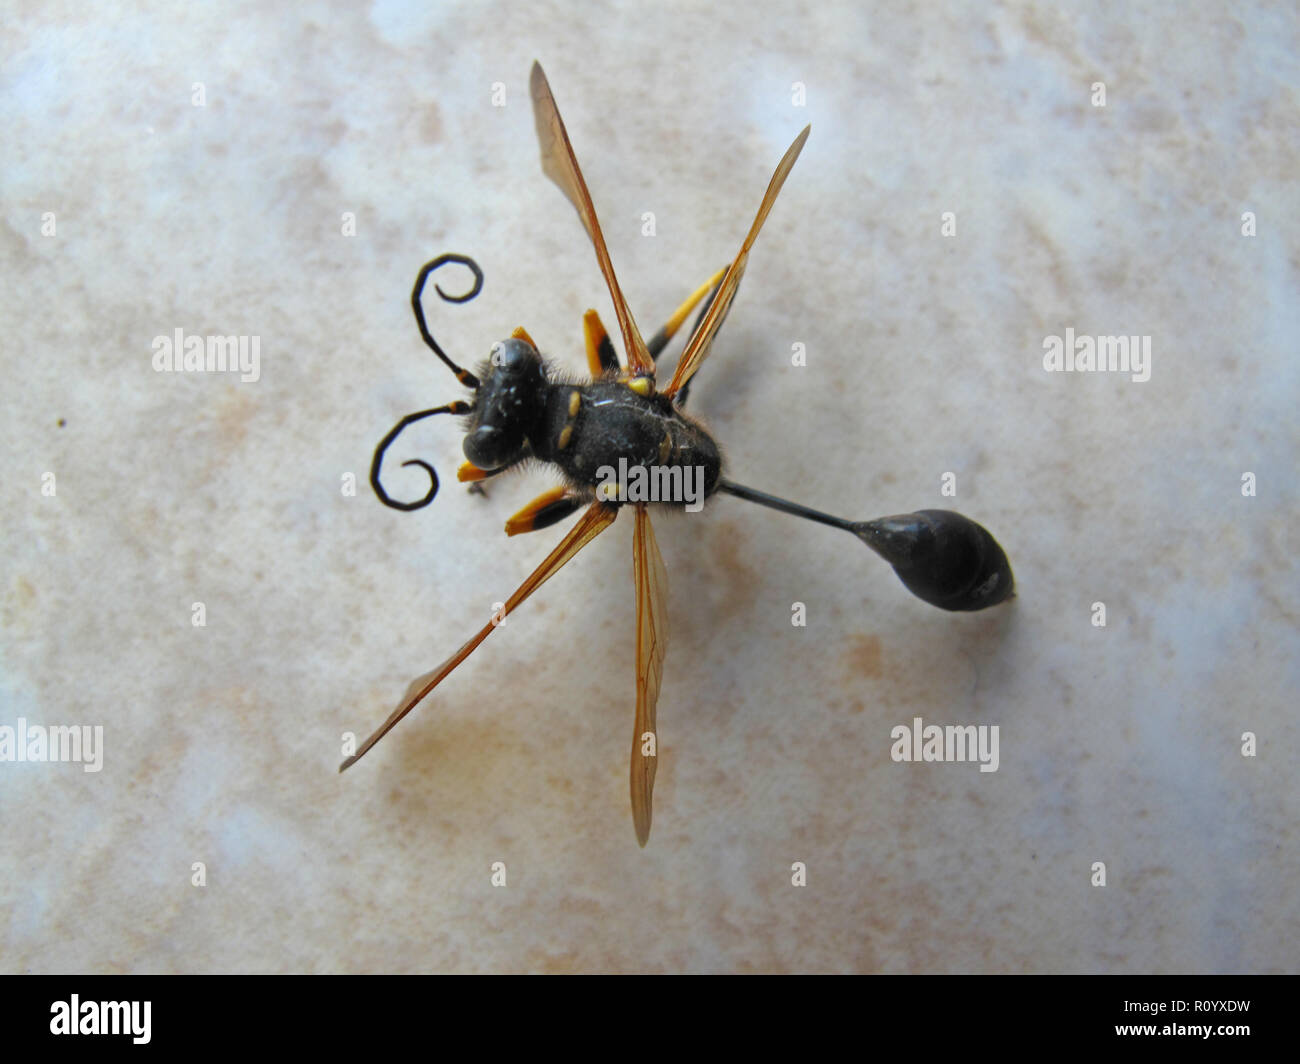 Gli insetti dell'ordine imenotteri con antenna di ricci e quattro ali Foto Stock